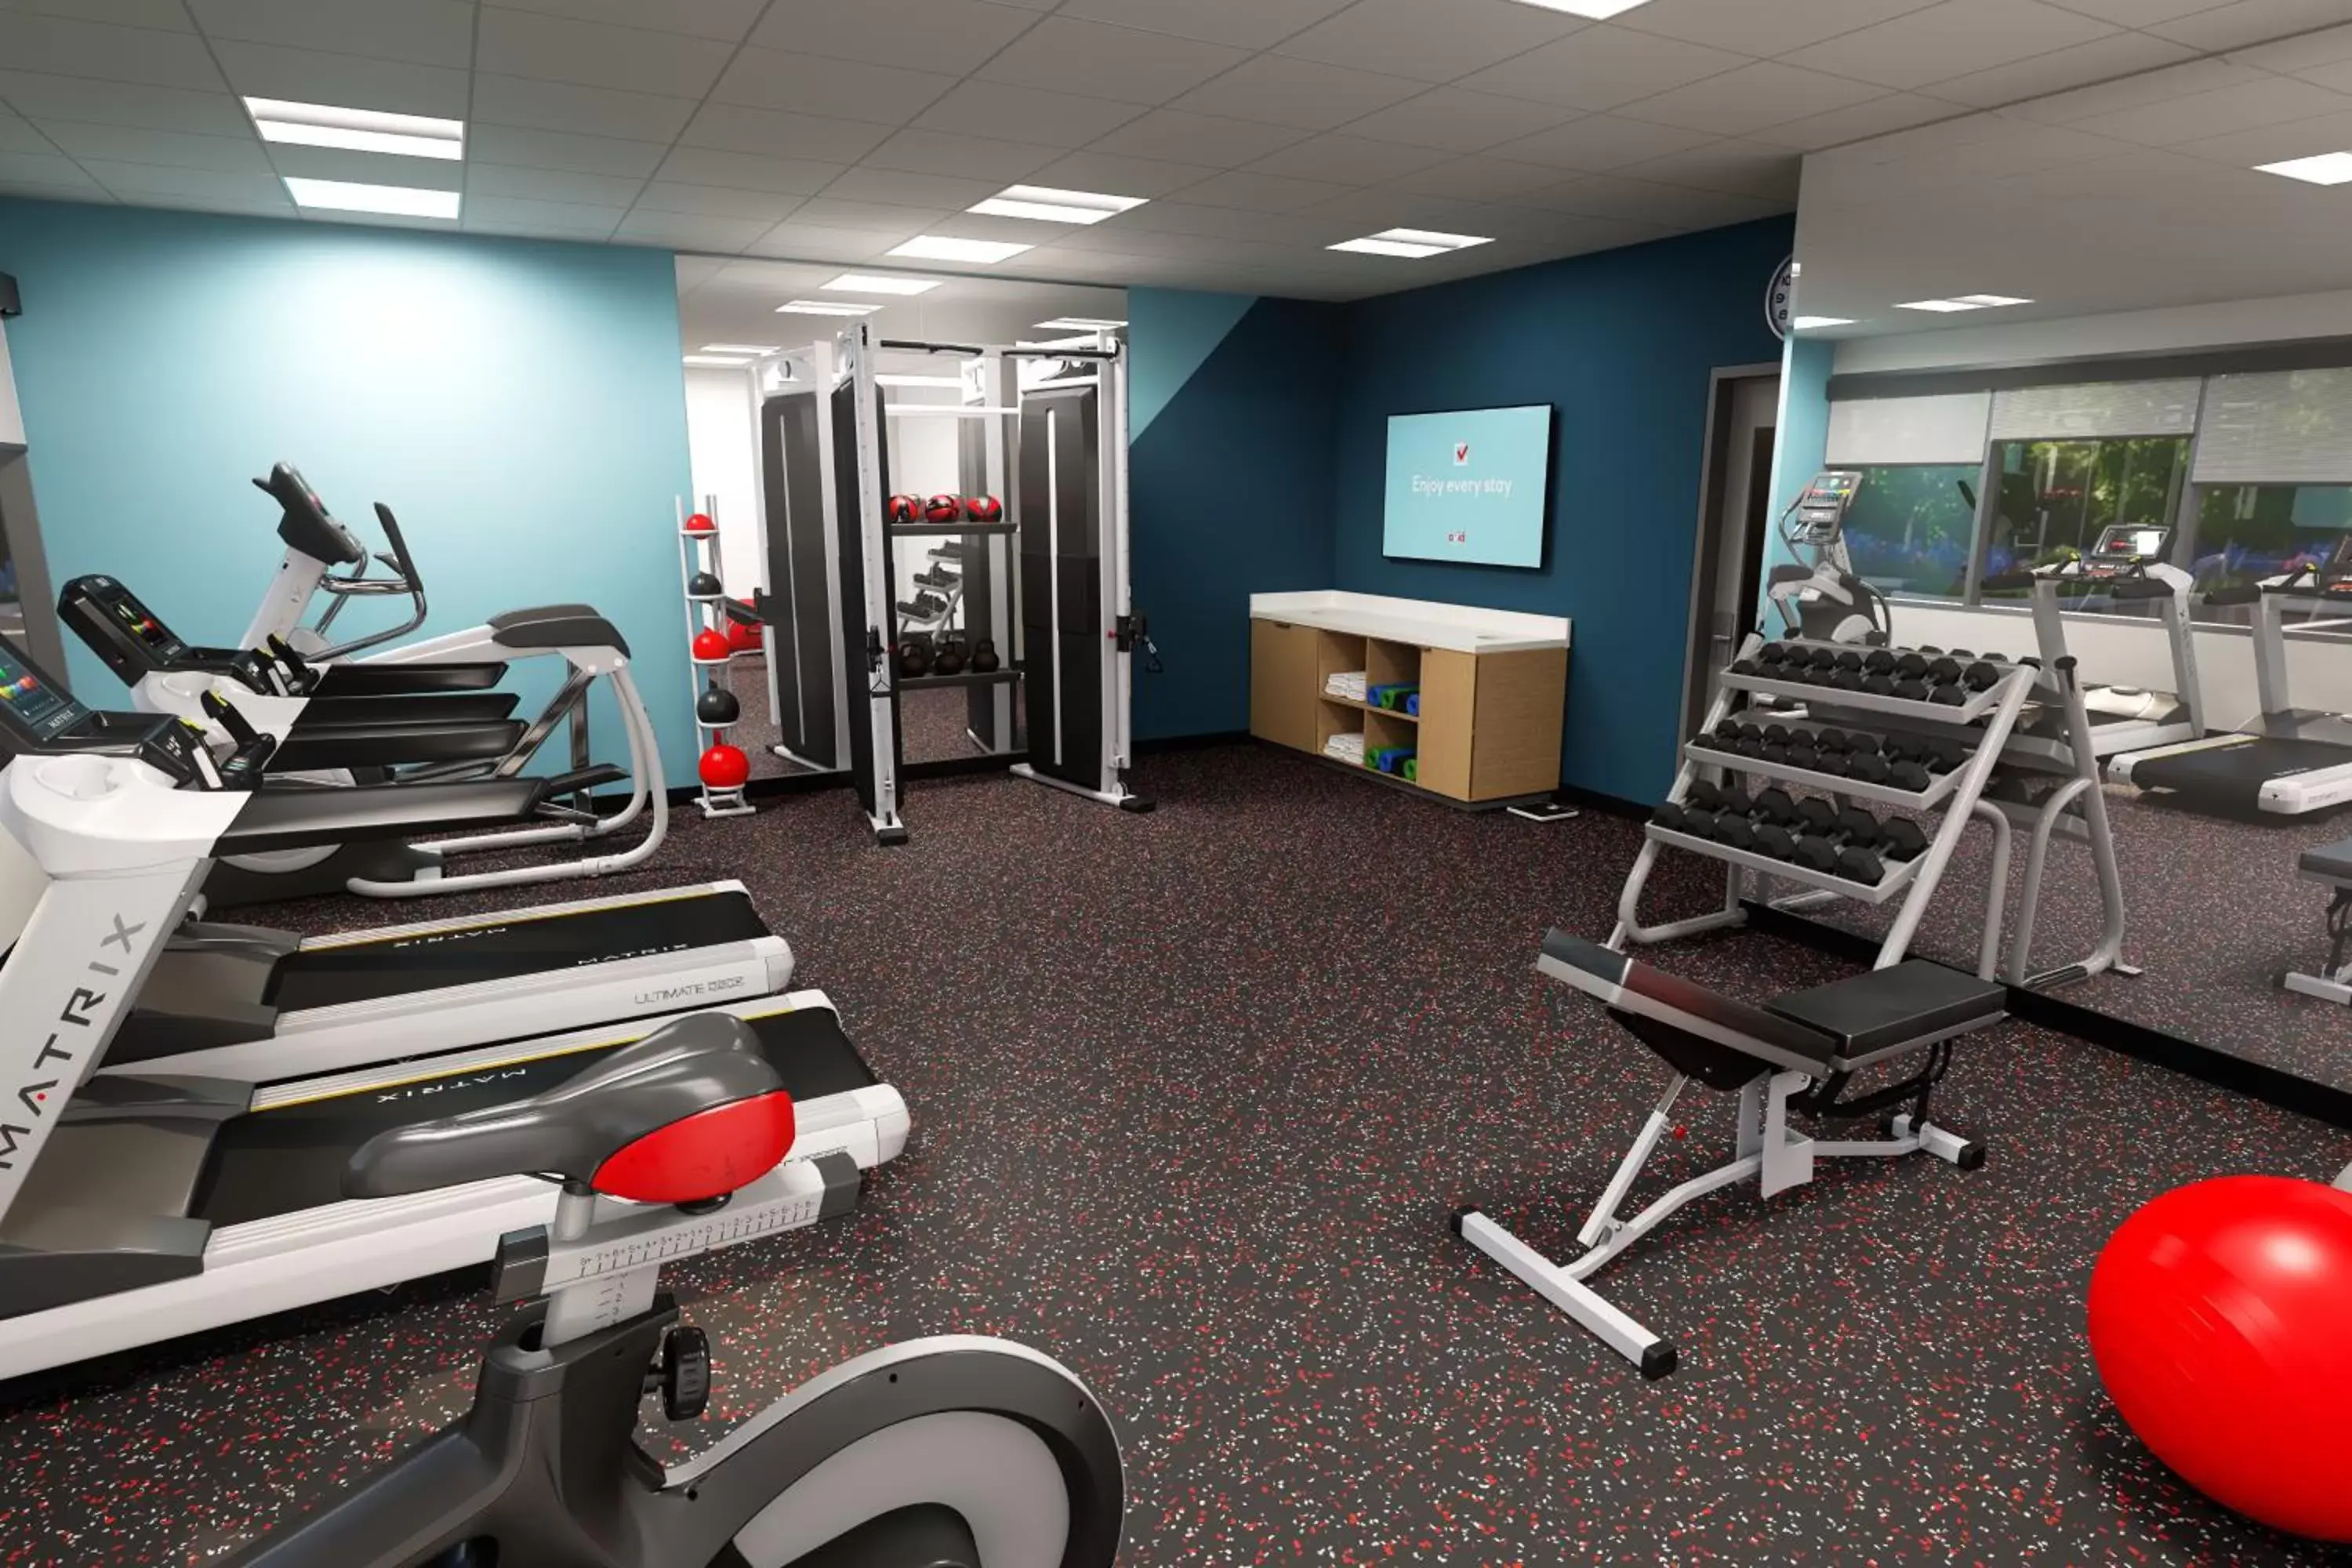 Fitness centre/facilities, Fitness Center/Facilities in Avid hotels - Oklahoma City - Yukon, an IHG Hotel